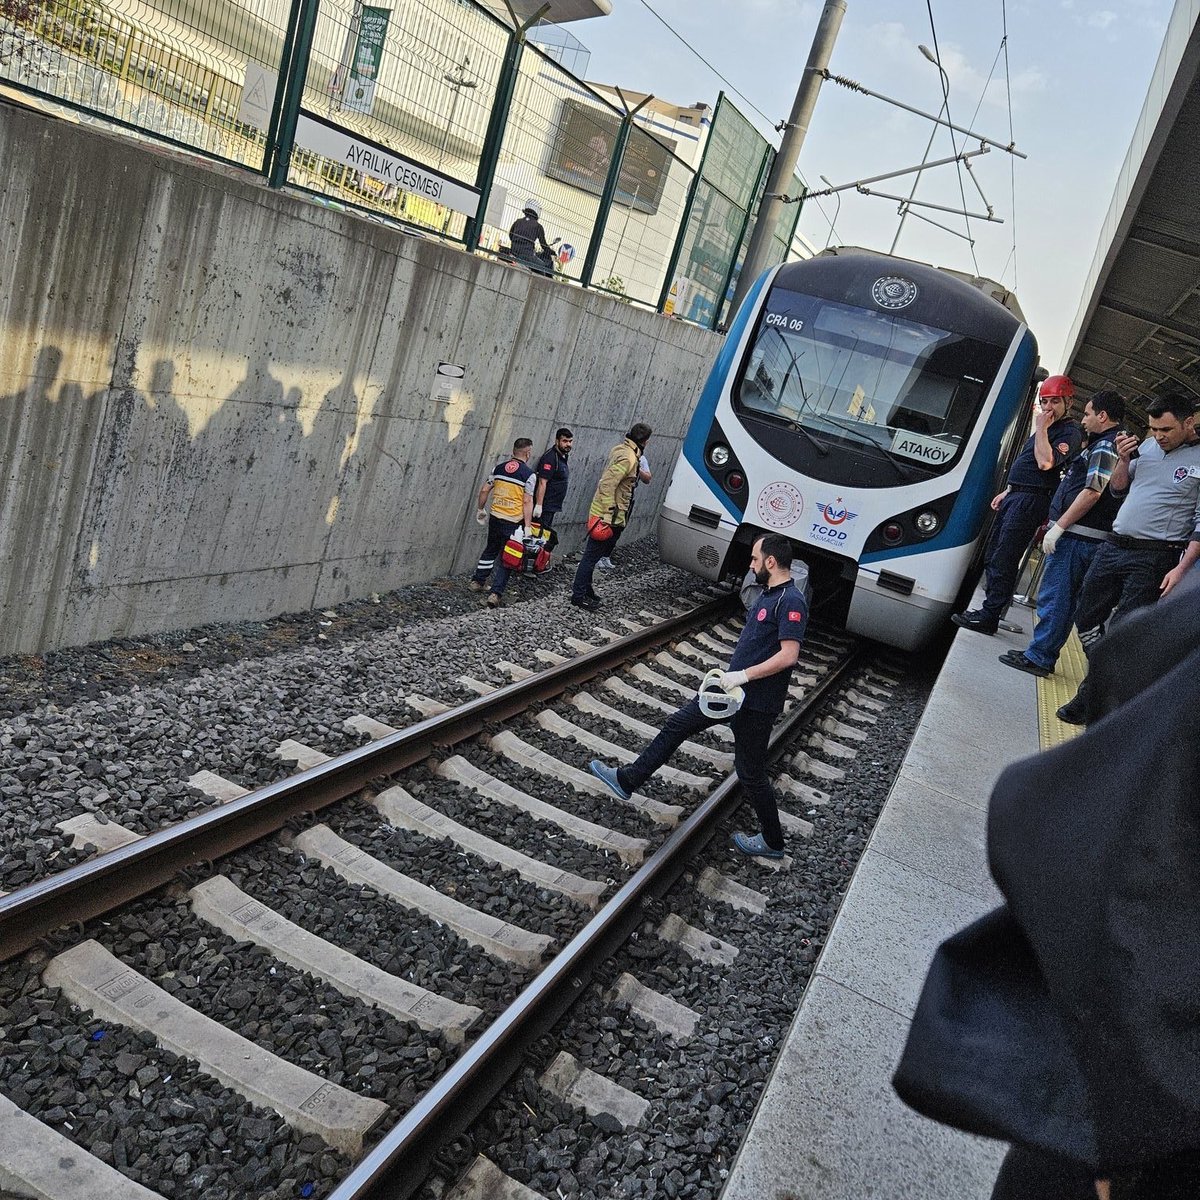 📌Kadıköy Ayrılık Çeşmesi Marmaray istasyonunda bir kadın, kendini trenin altına atarak yaşamına son verdi